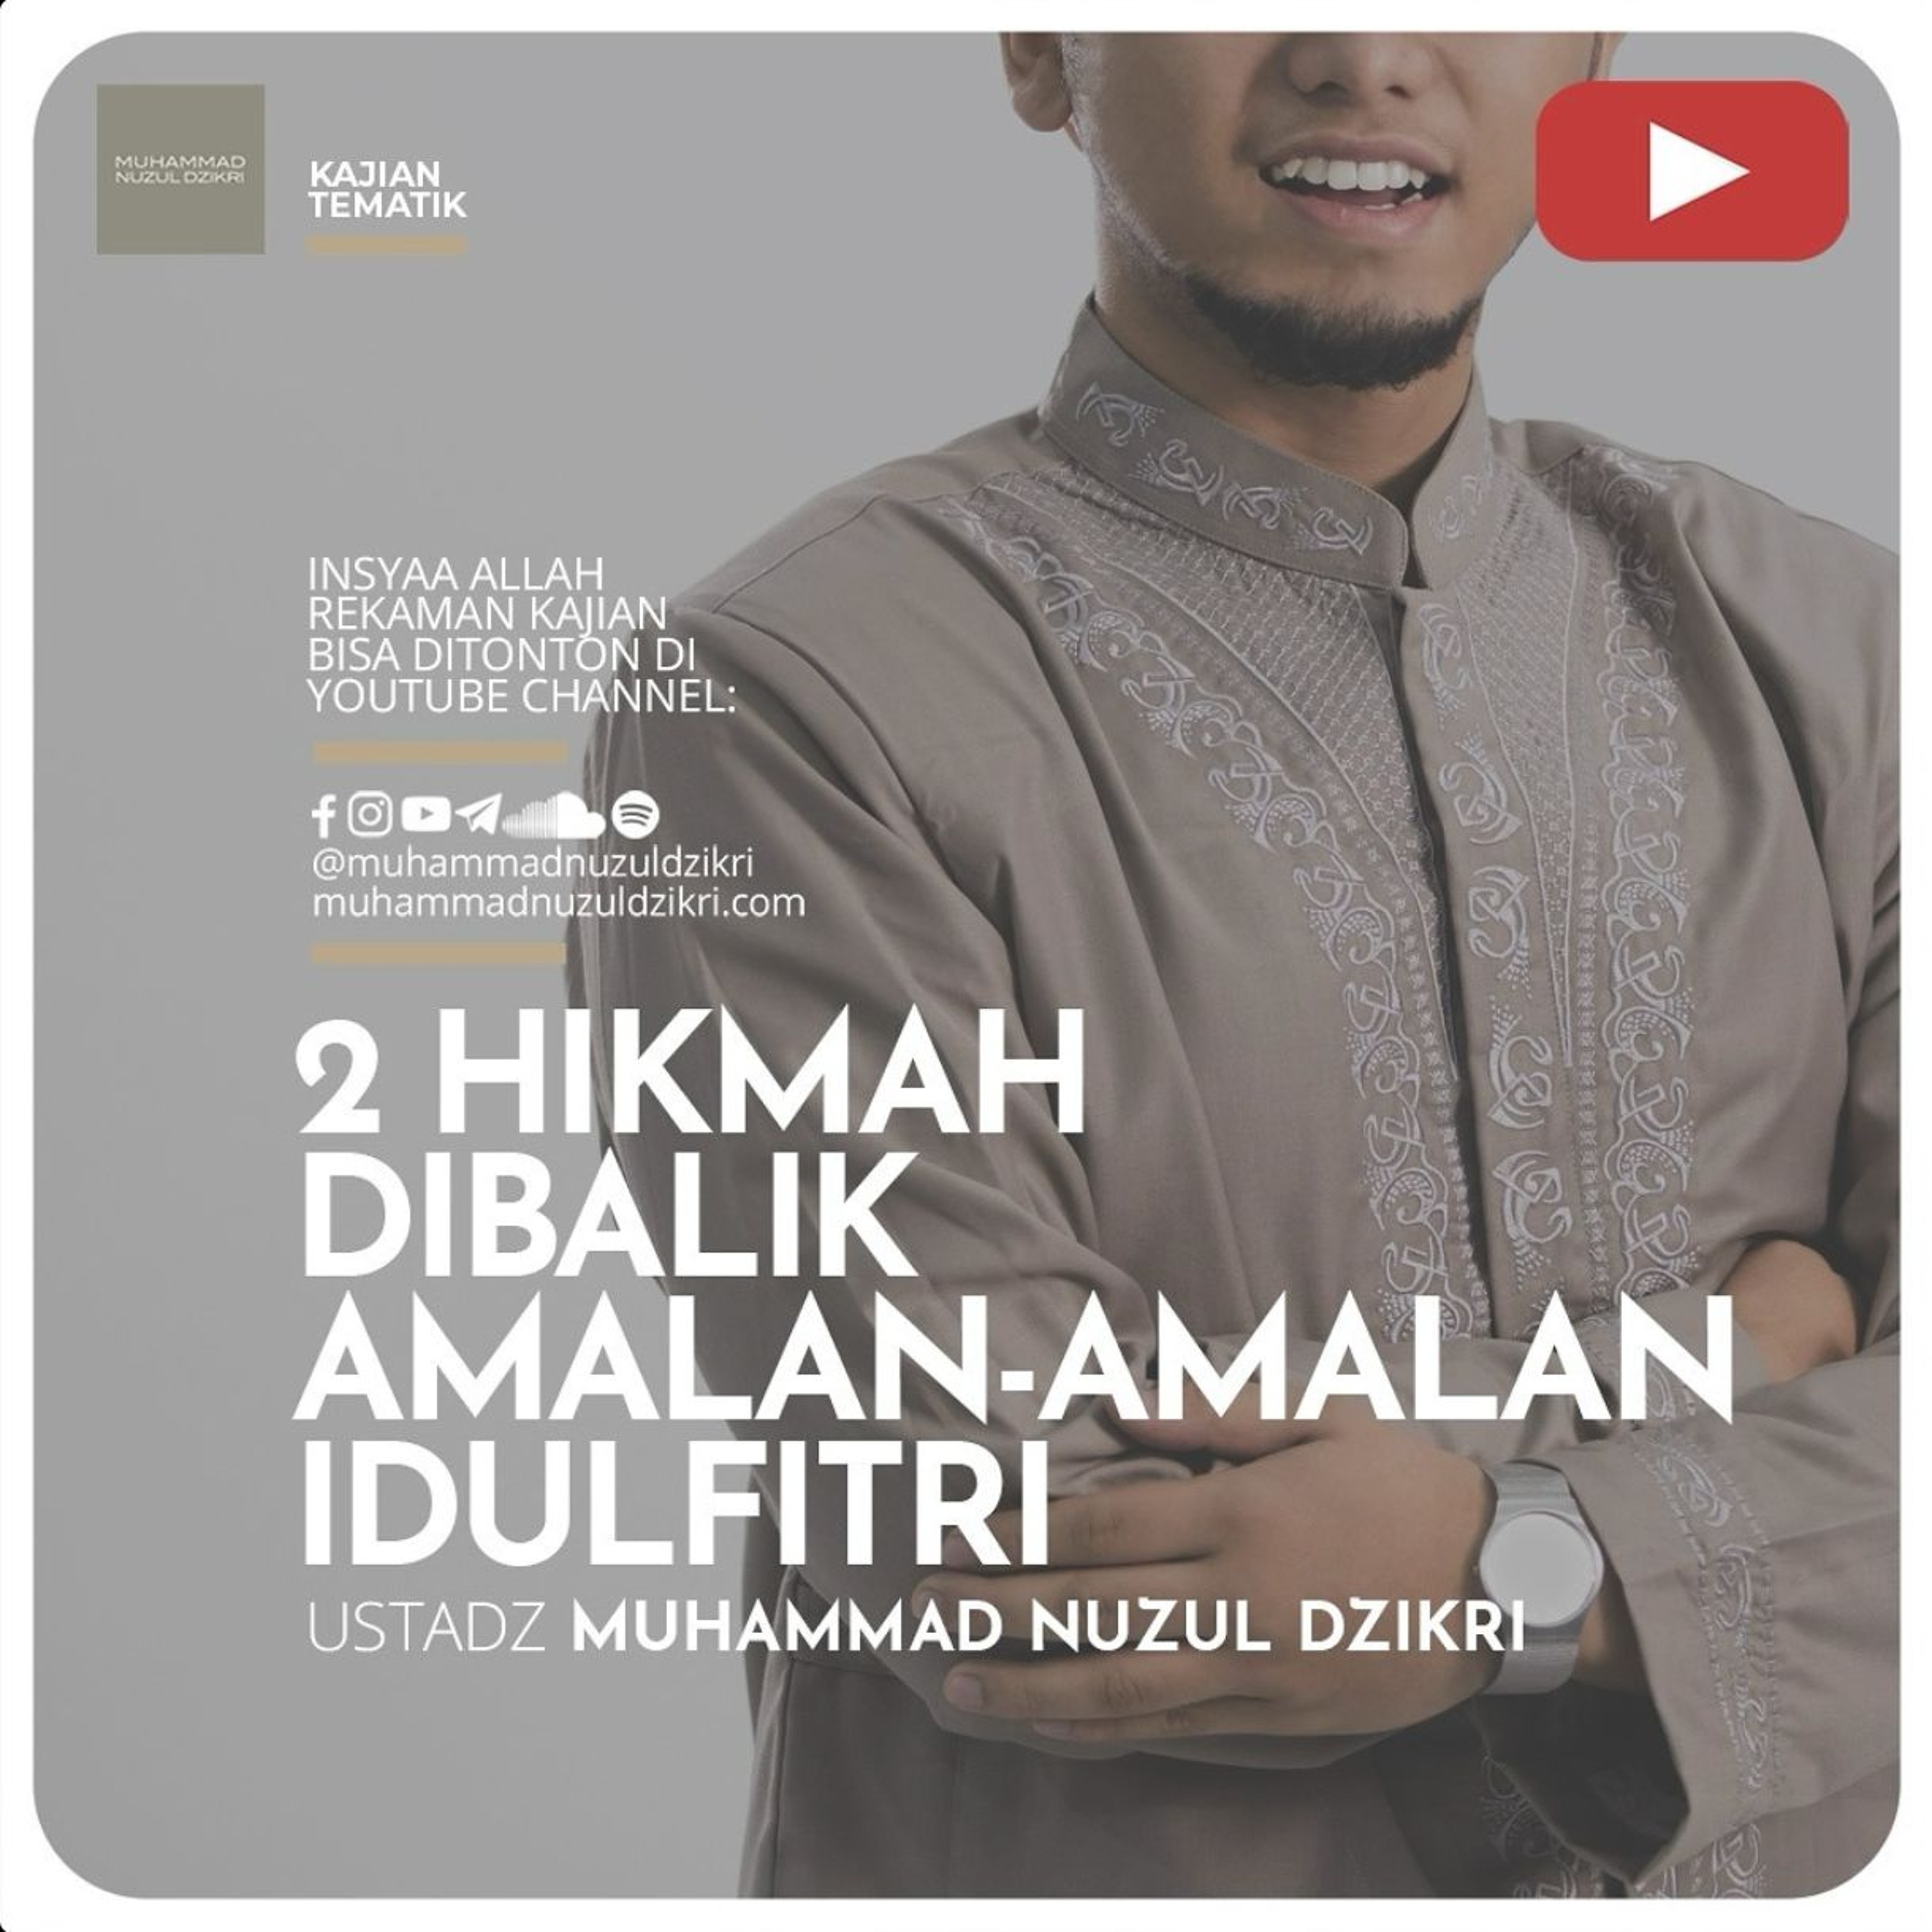 Kajian Tematik Syawwal 02. ”2 HIKMAH DIBALIK AMALAN-AMALAN IDULFITRI” - Ustadz Muhammad Nuzul Dzikri